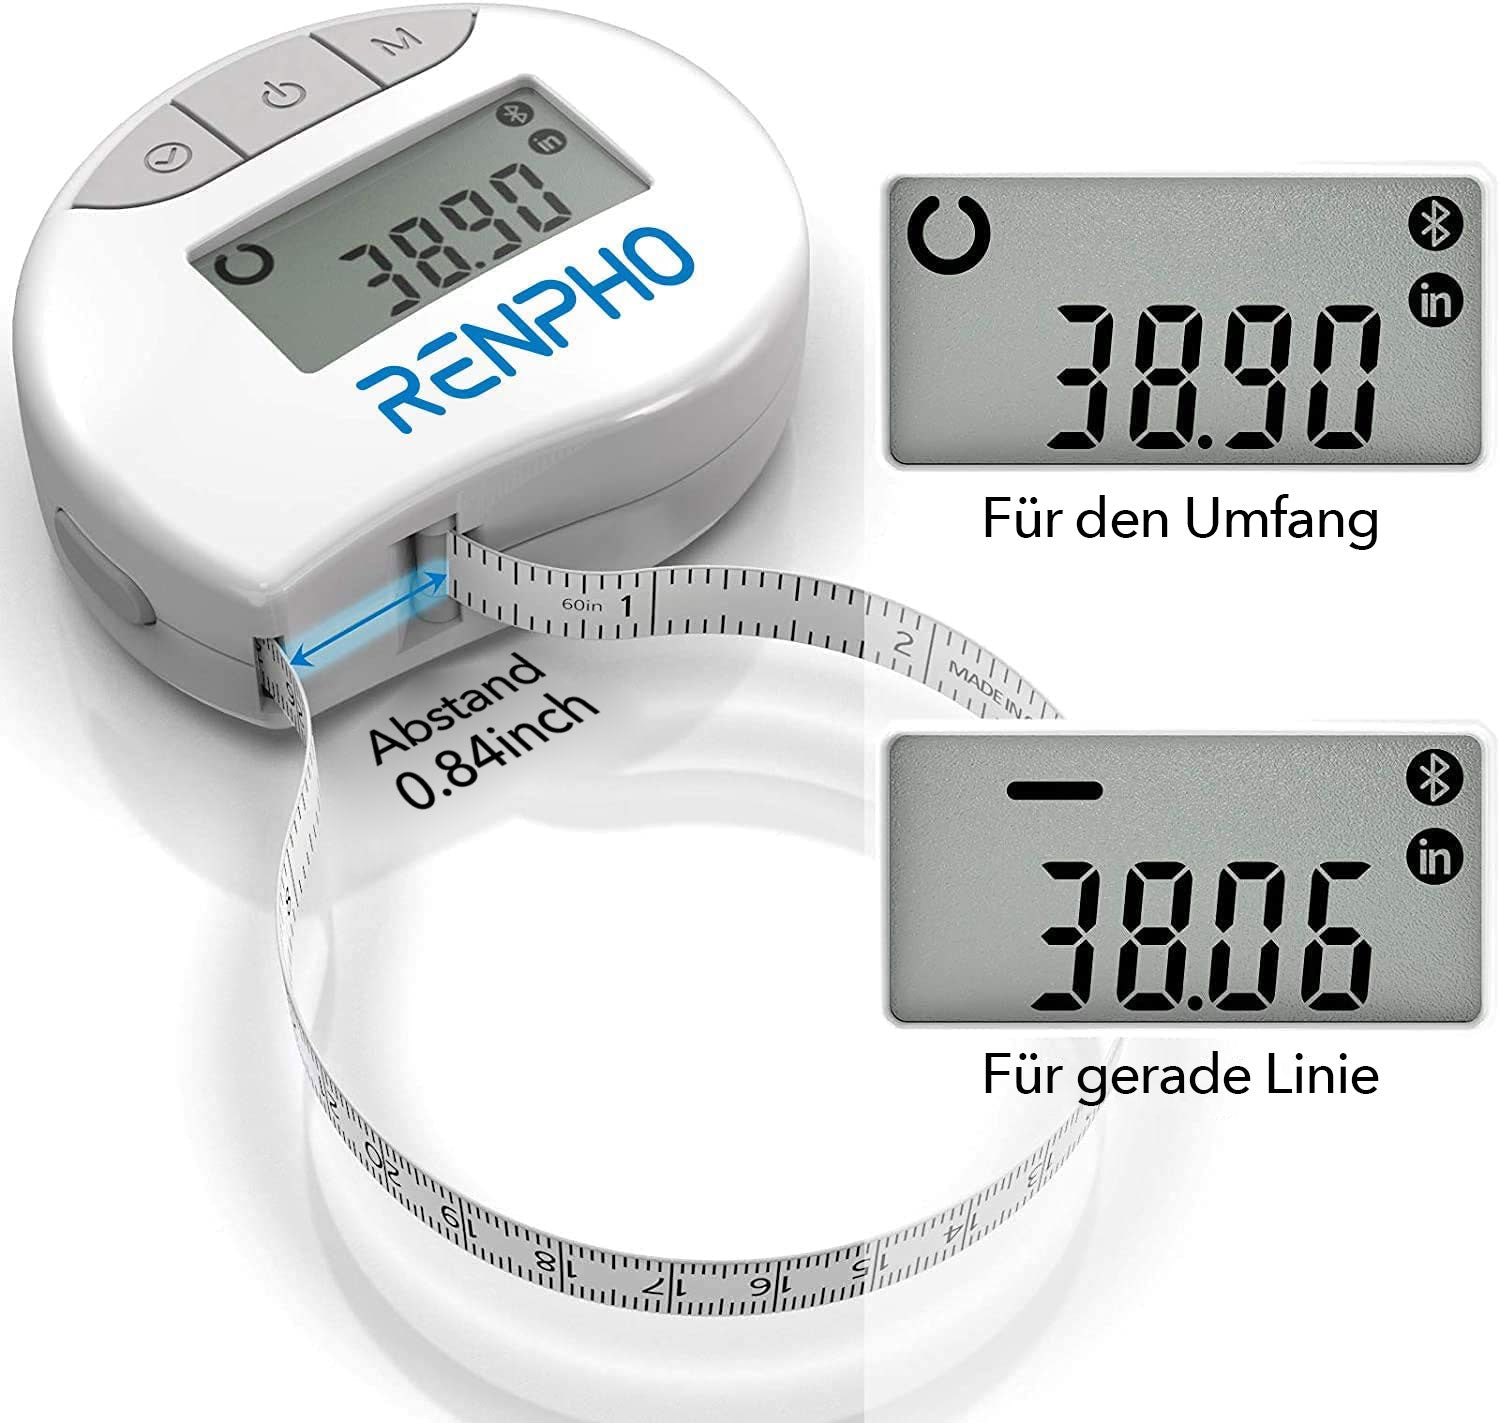 Renpho DE Smartes Körperumfangmaßband für Gesundheit und Fitness.